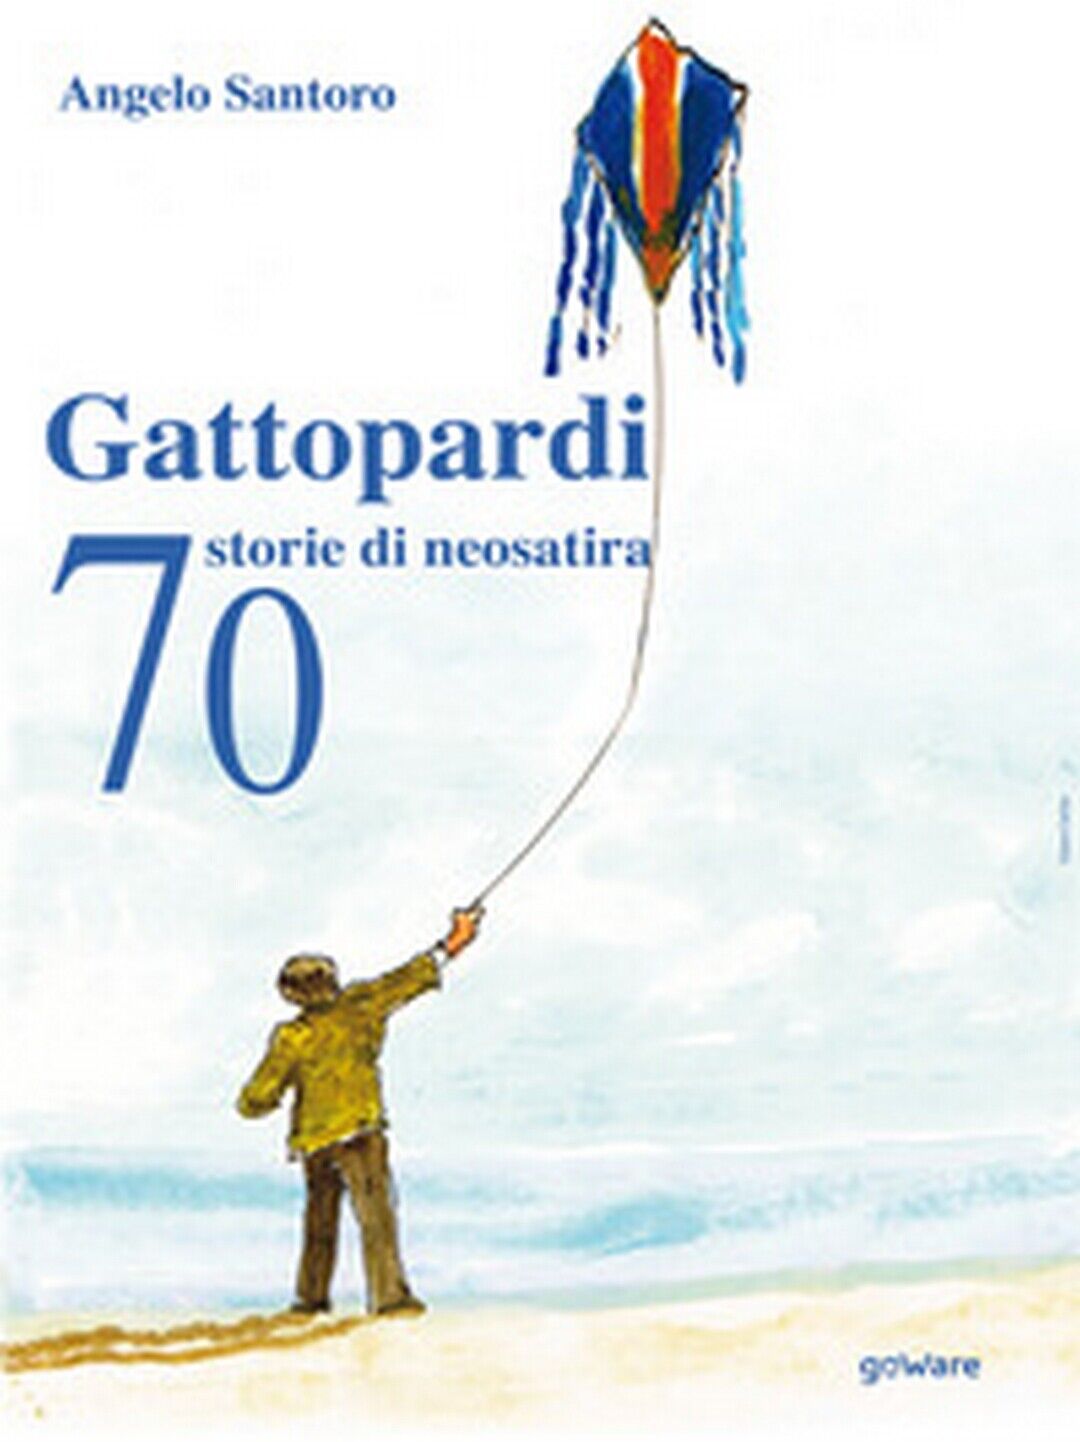 Gattopardi. 70 storie di neosatira  di Angelo Santoro,  2019,  Youcanprint